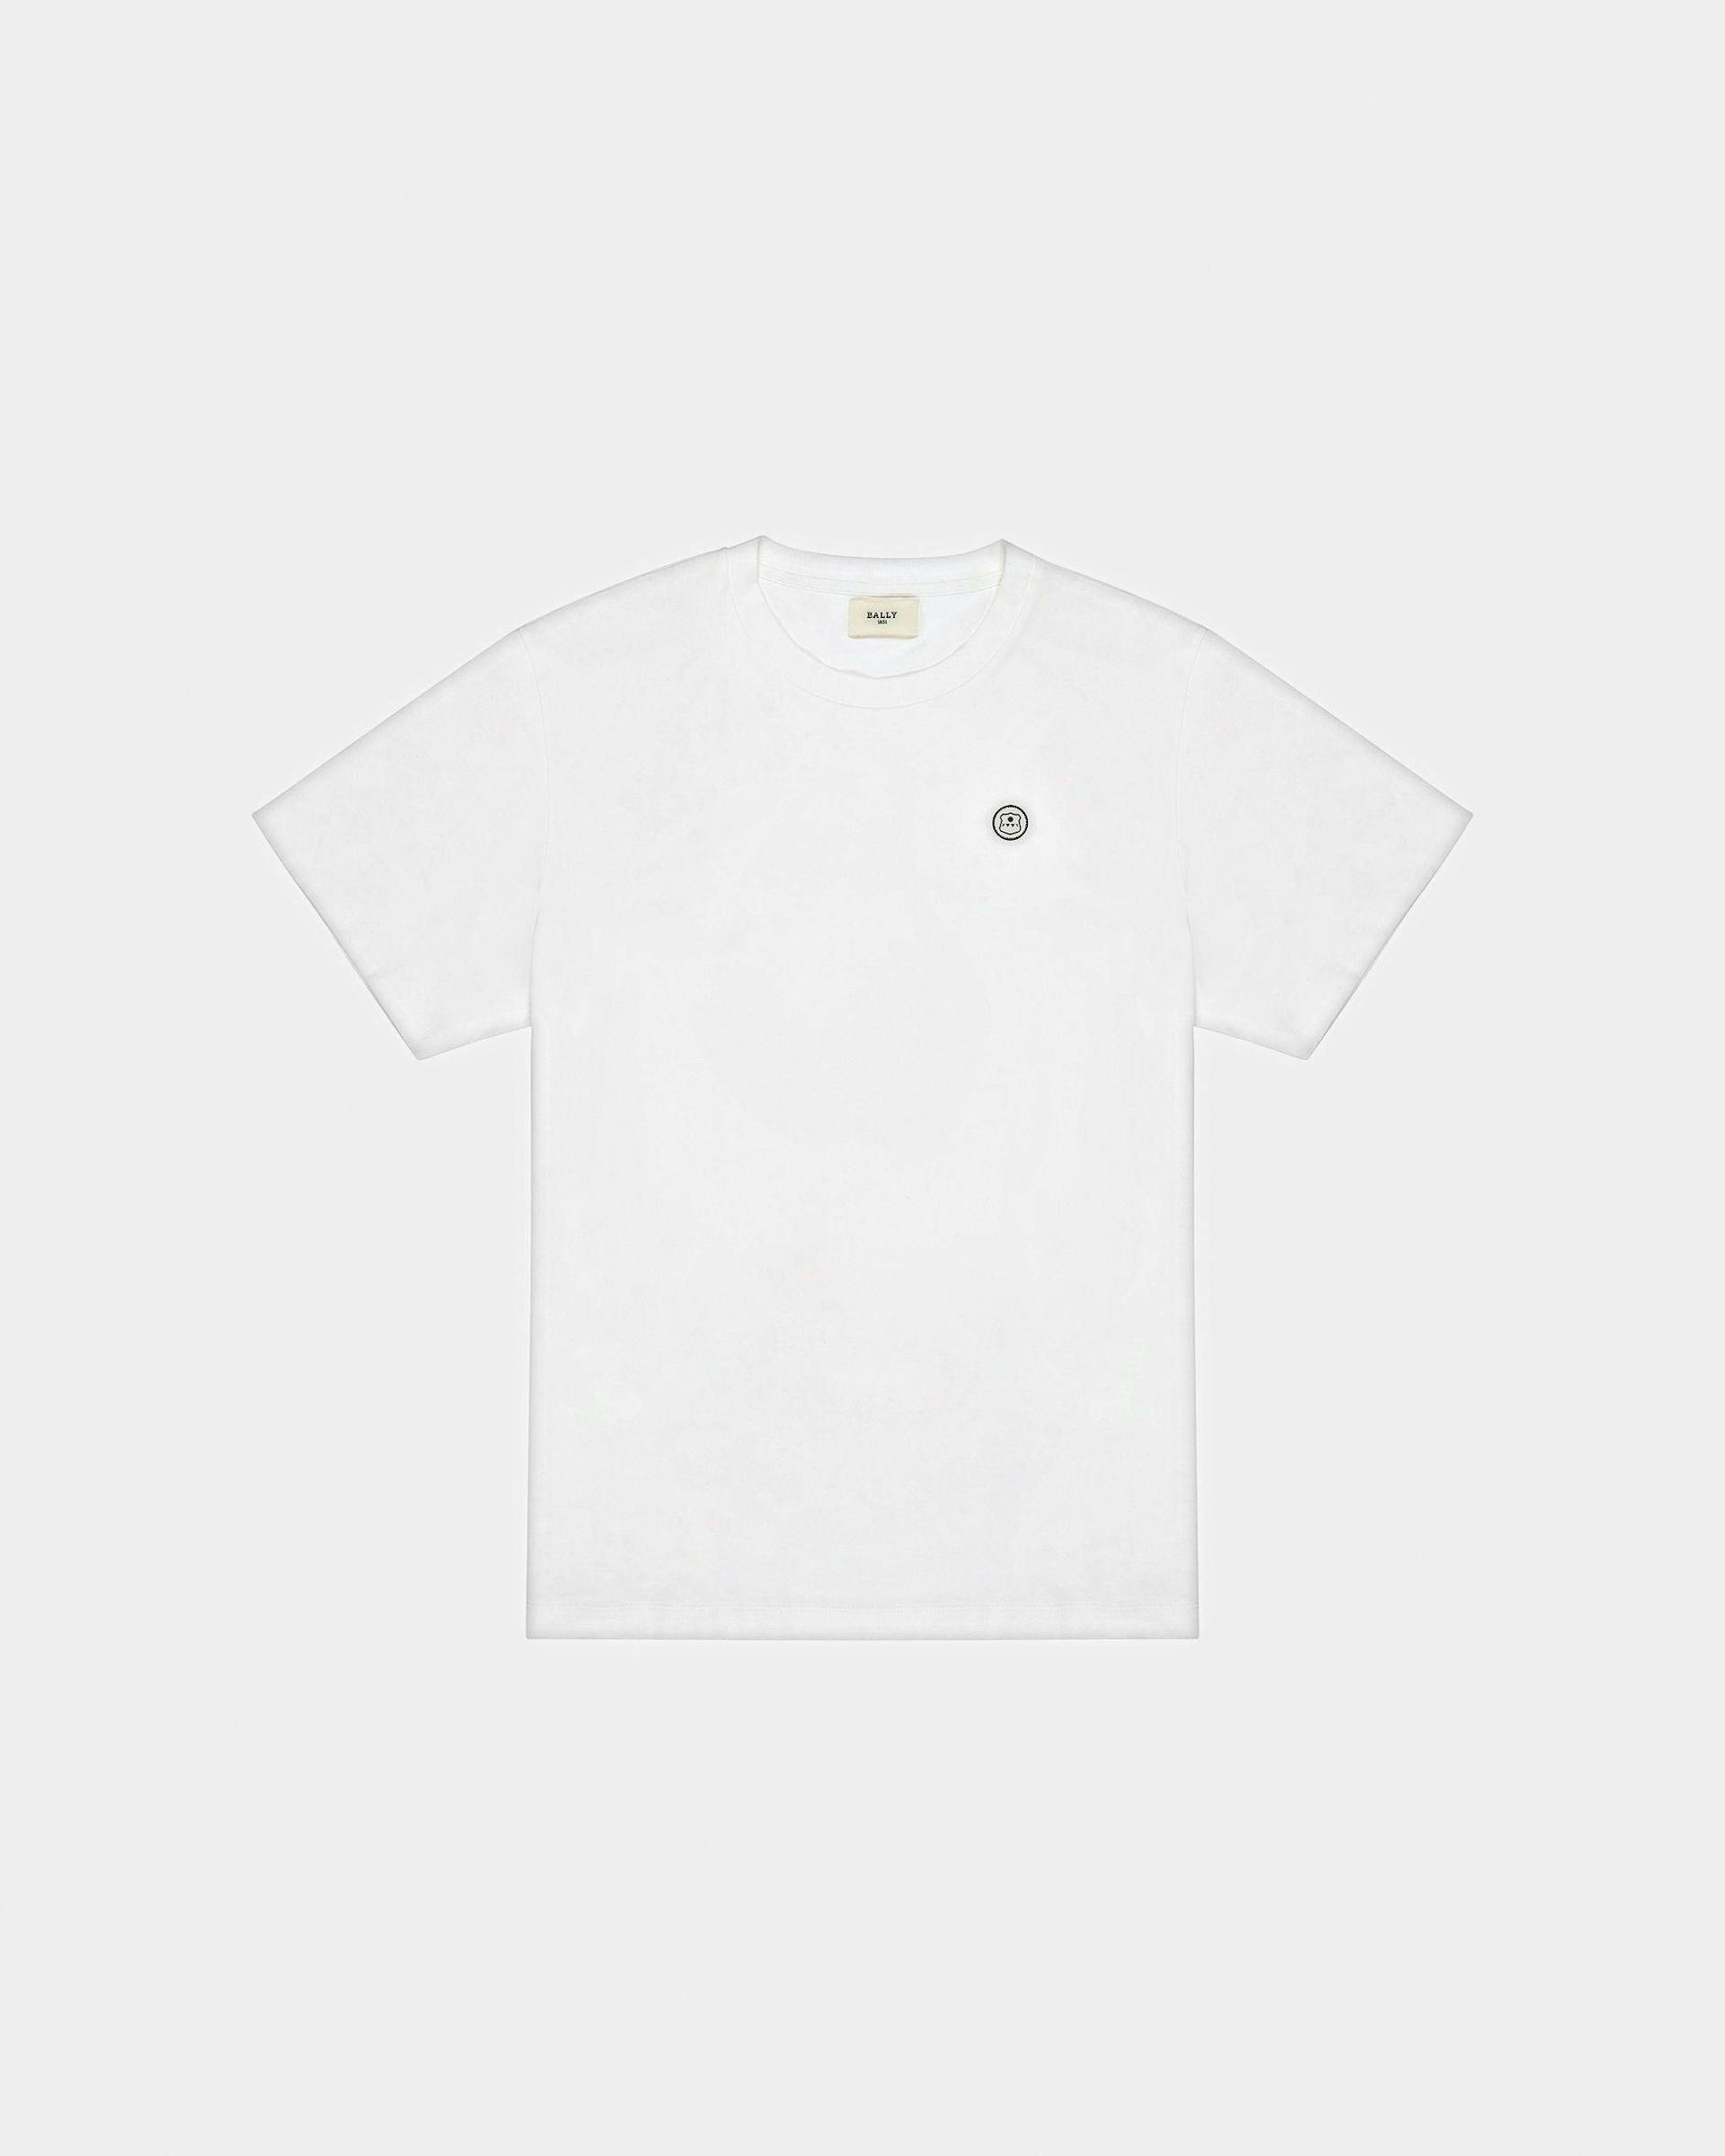 T-Shirt Mit Bally-Stempellogo Baumwoll-T-Shirt In Weiß - Herren - Bally - 01